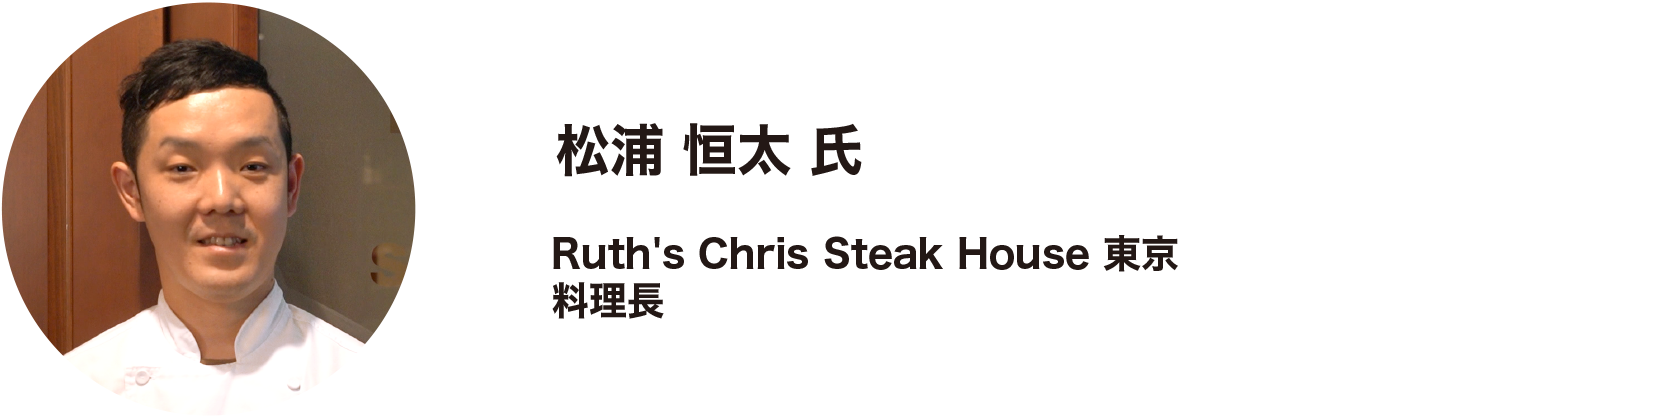 松浦 恒太 氏  Ruth's Chris Steak House 東京 料理長